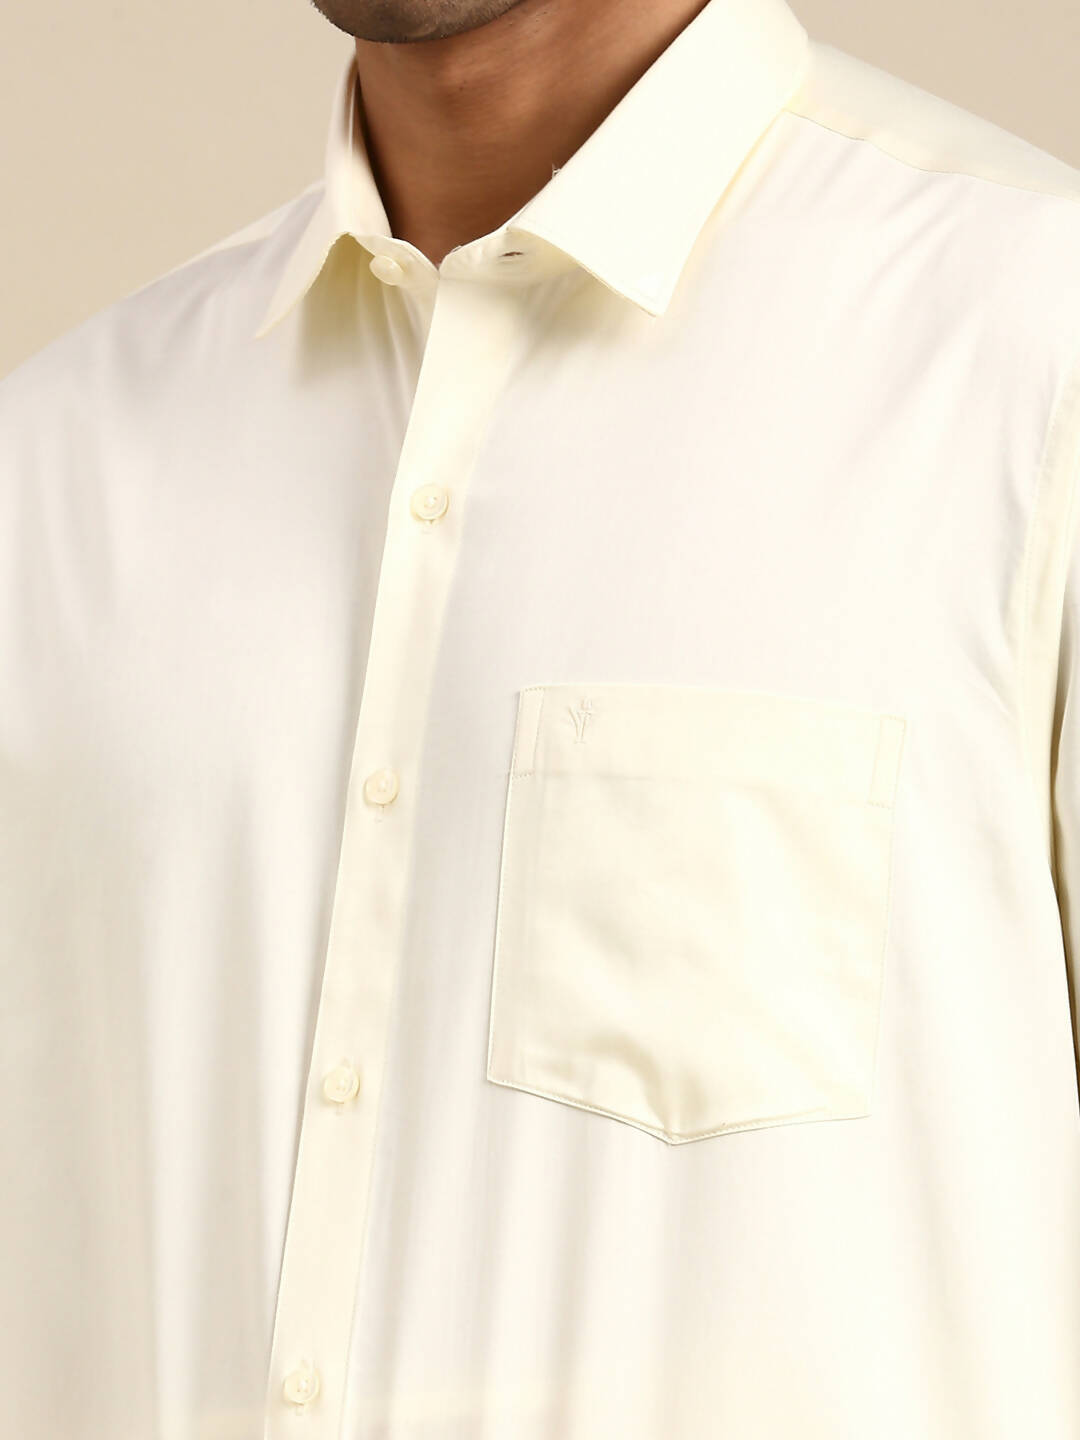 Ramraj Cotton Mens Wedding Cream Regular Dhoti, Shirt & Towel Set Subhakalyan 1/2" - Distacart